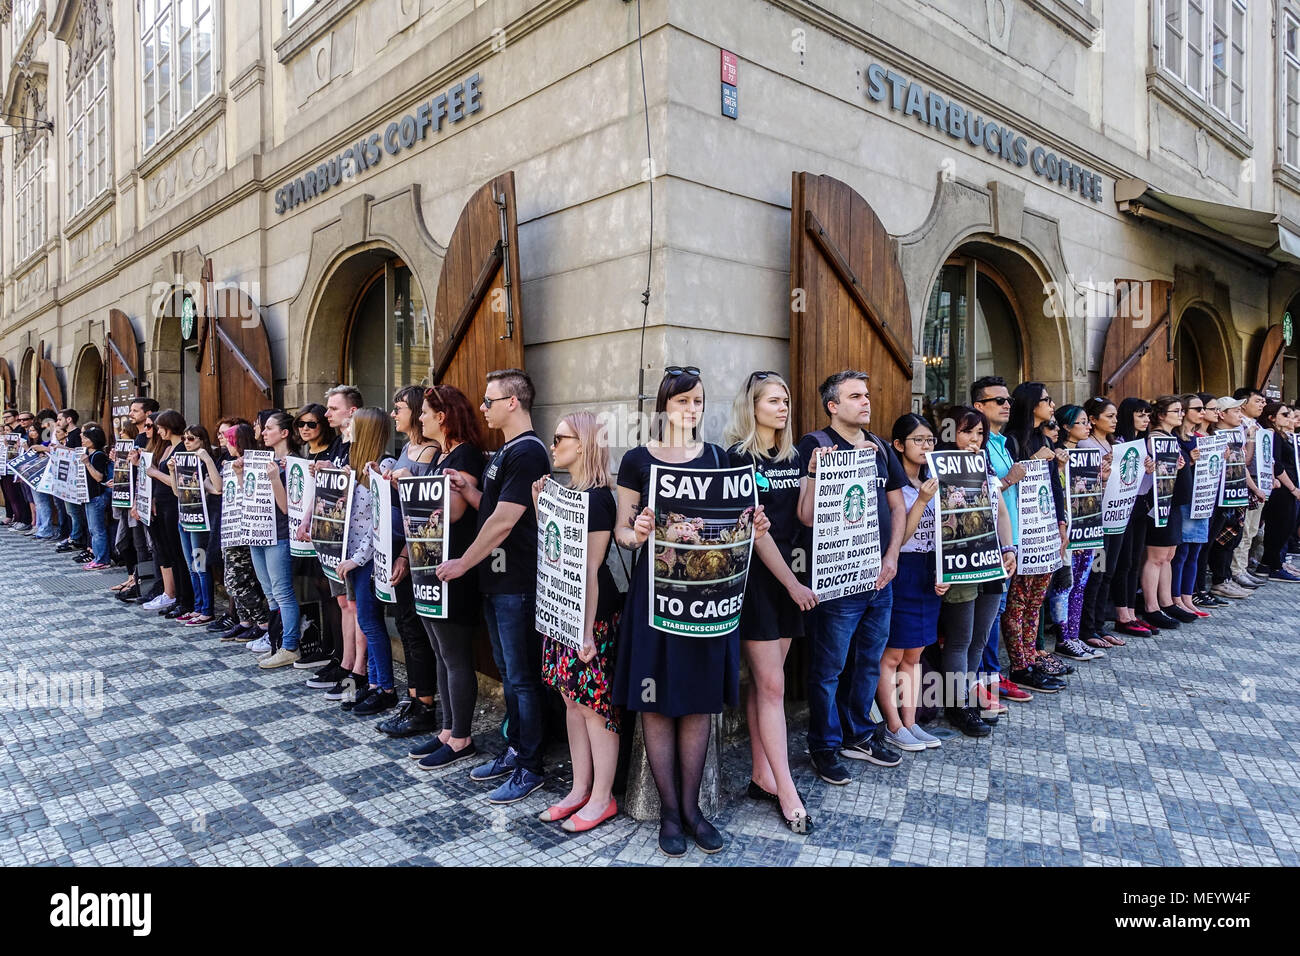 Gli avversari di caffè Starbucks catena sovranazionale hanno protestato davanti al café store, Malostranske namesti, Mala Strana, Praga, Repubblica Ceca Foto Stock